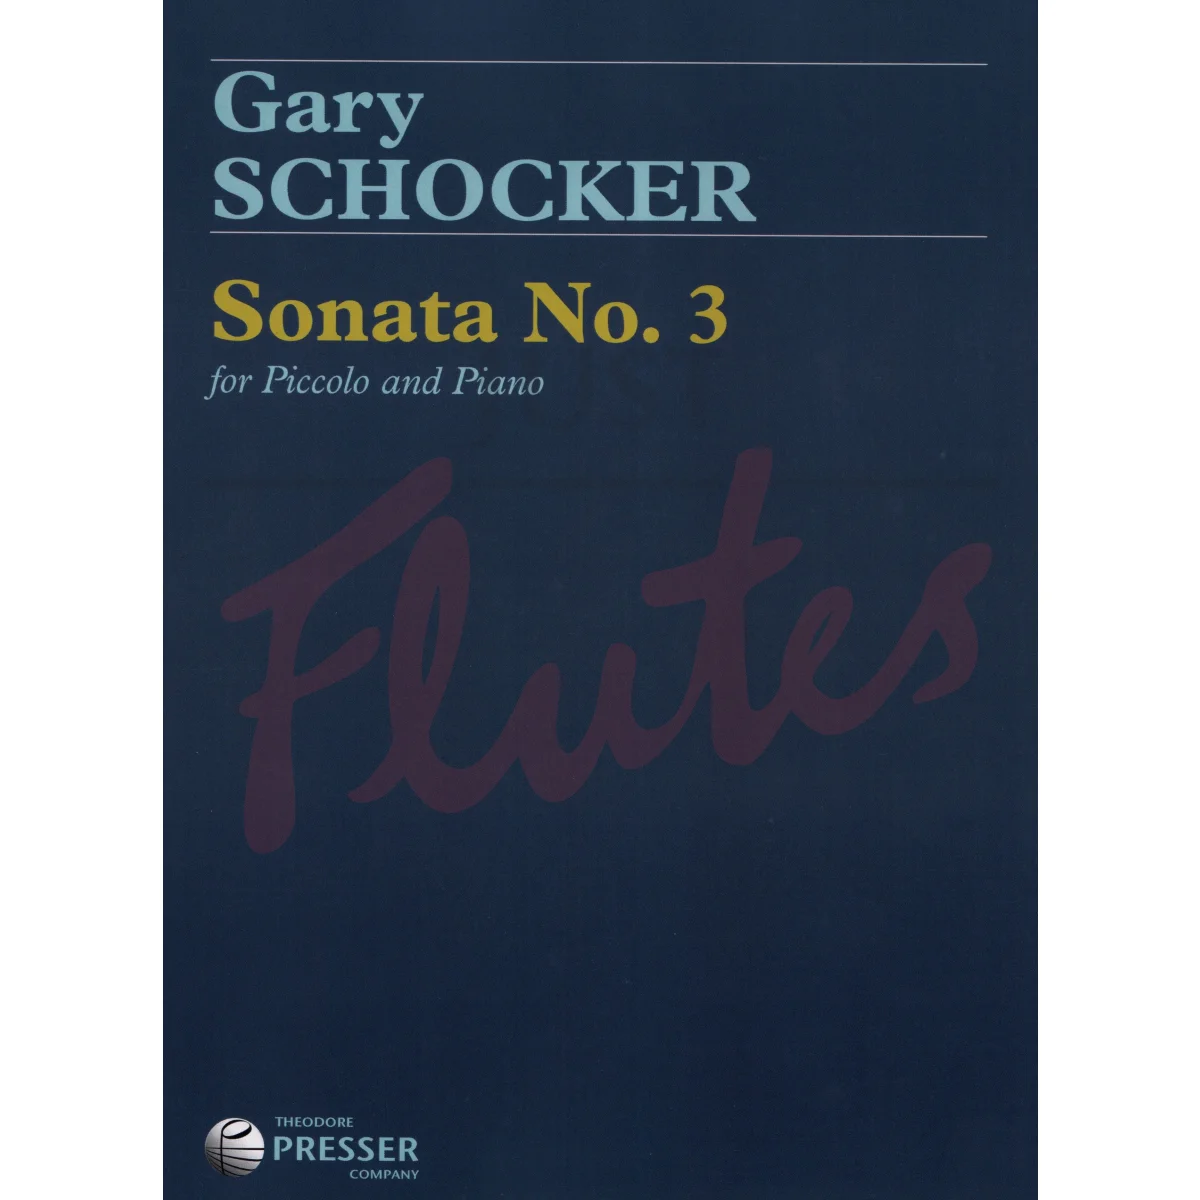 Sonata No 3 for Piccolo and Piano